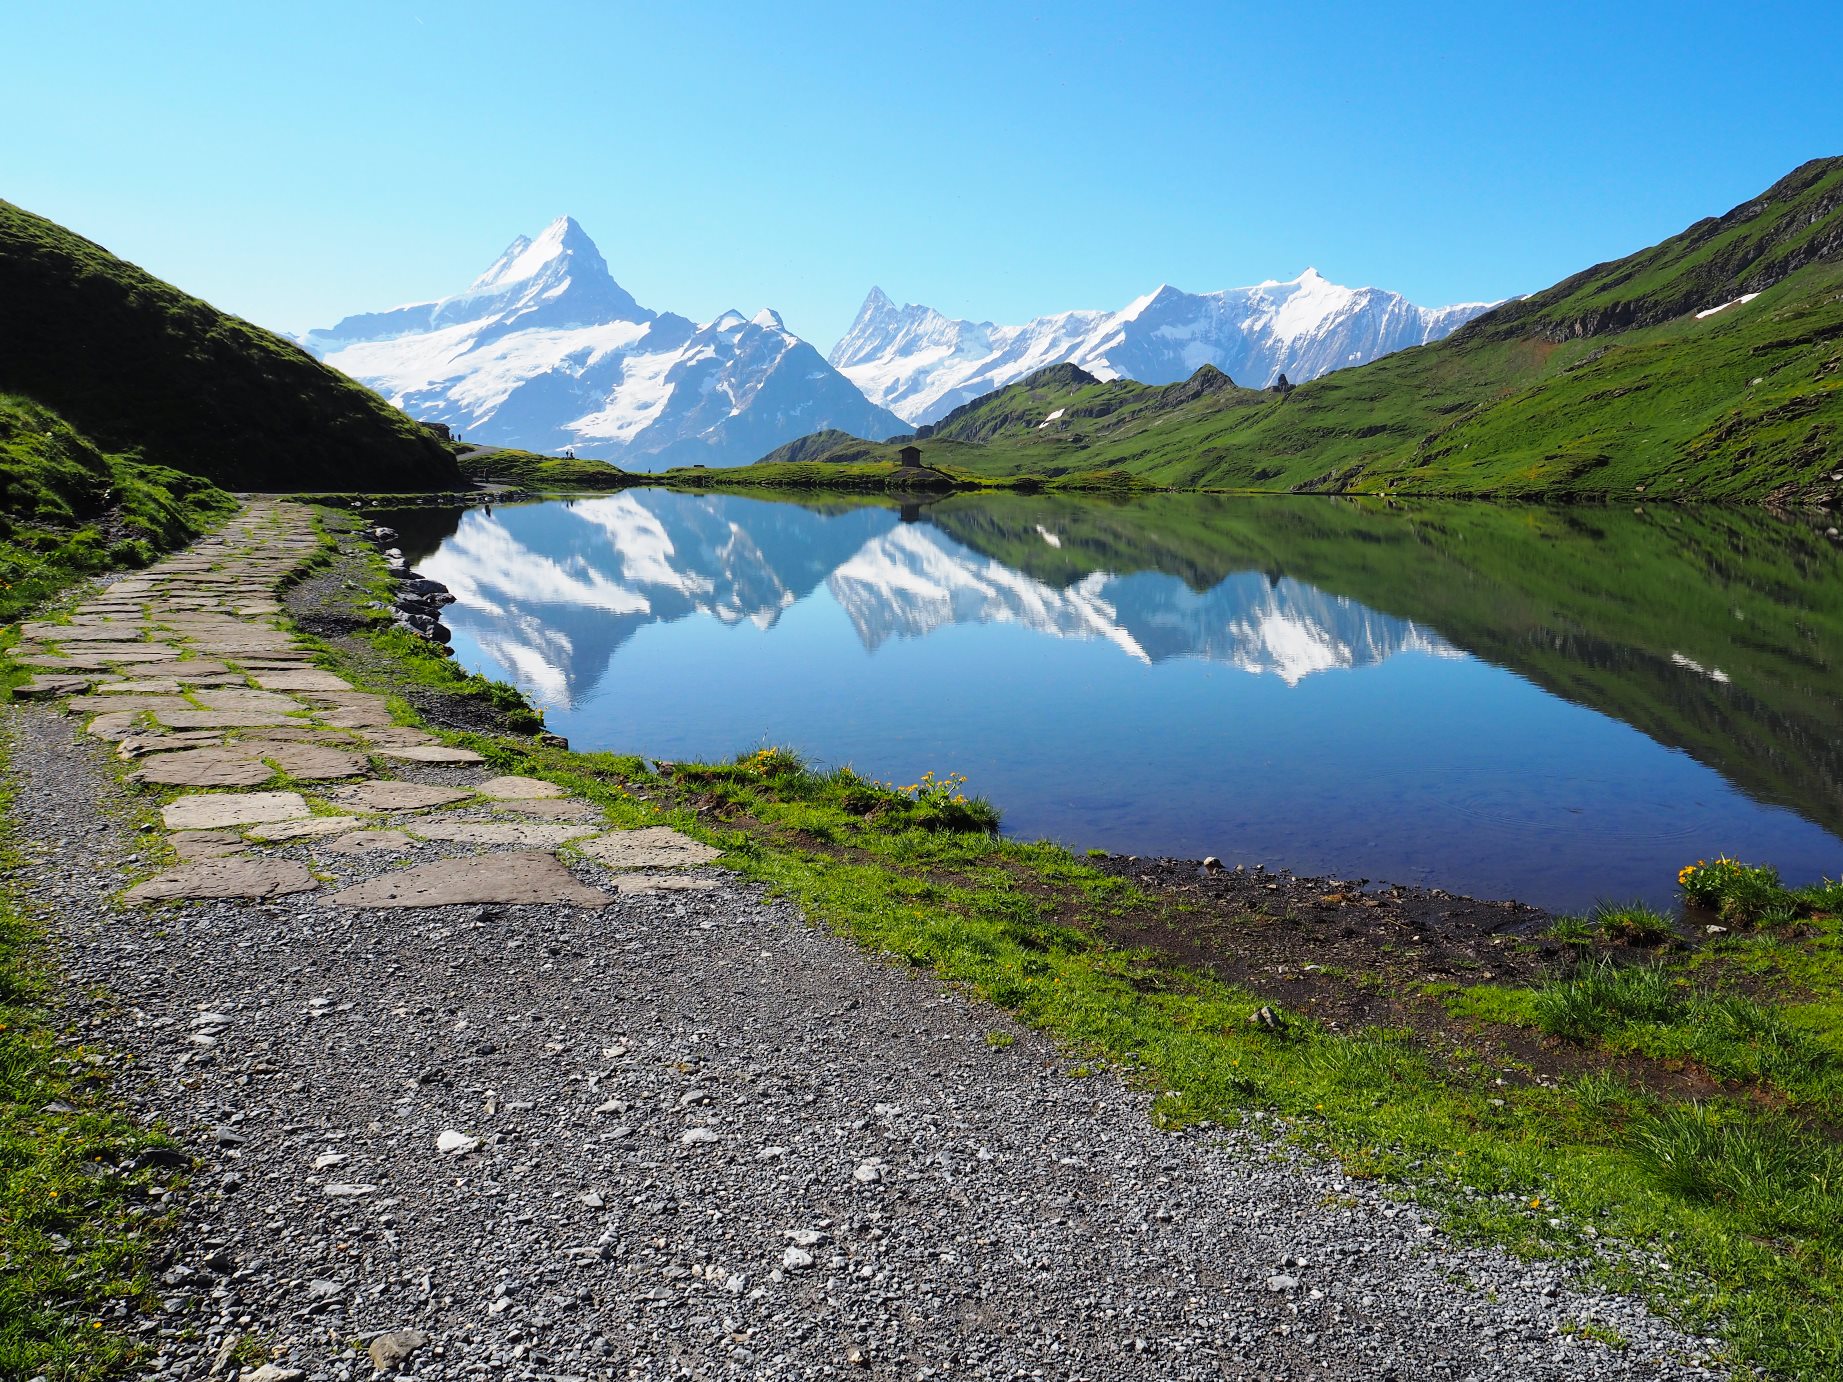 7月16日出発「スイス・アルプス・パノラマ・ハイキングと憧れのヘルンリ小屋訪問と3,400m峰登頂 9日間」